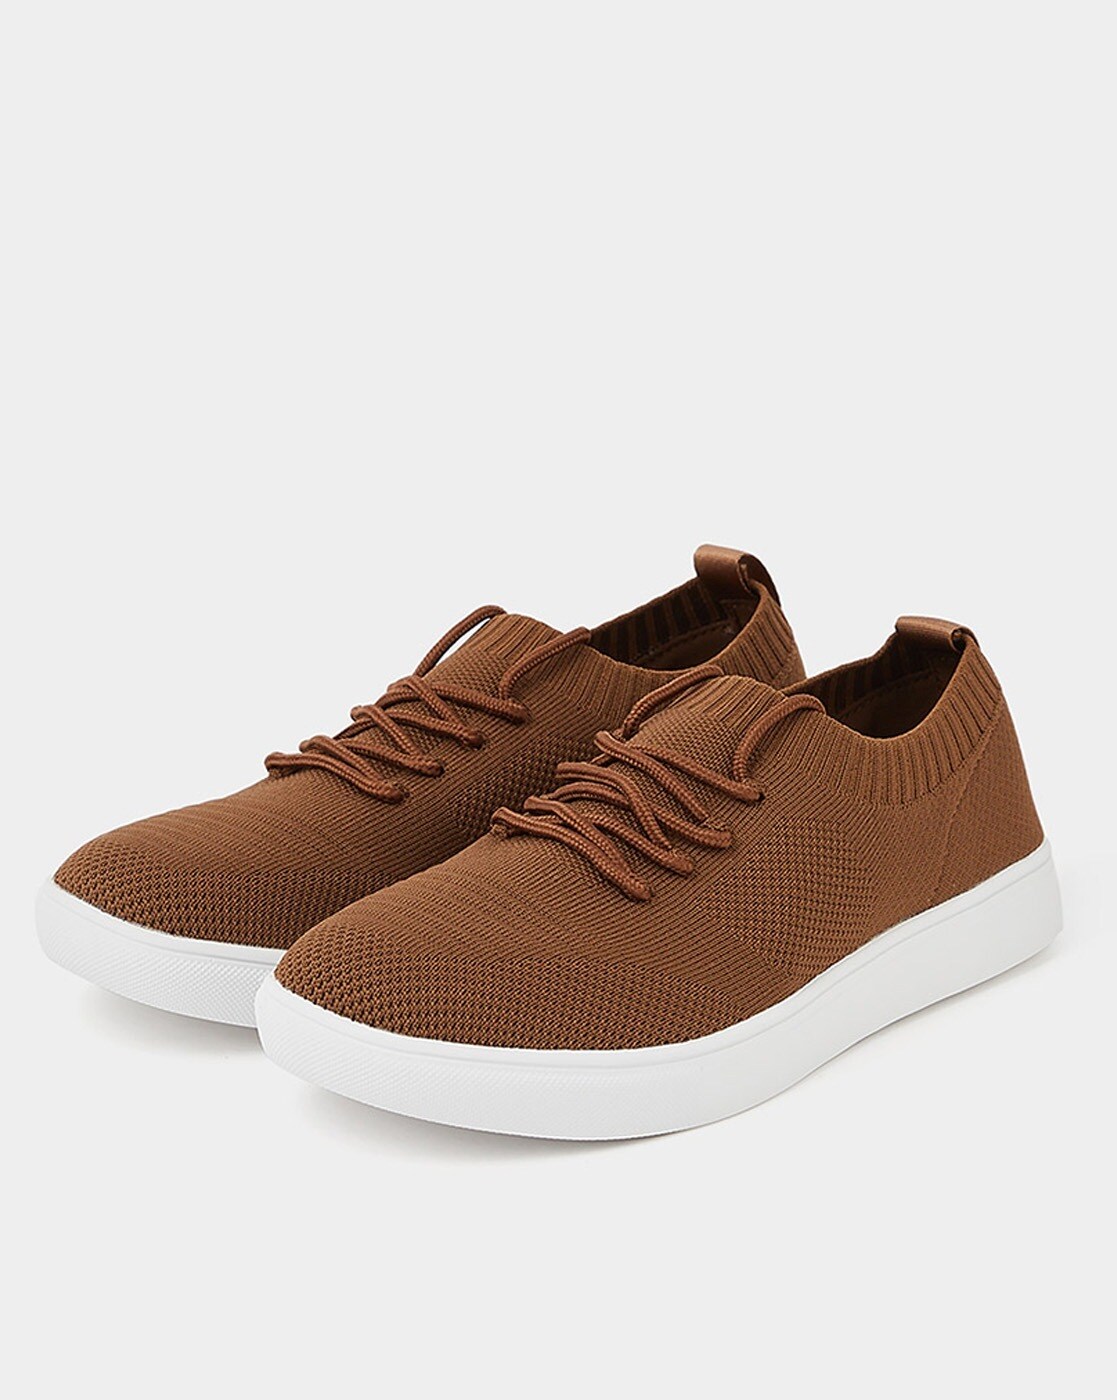 Buy Men Brown Casual Sneakers Online | Walkway Shoes